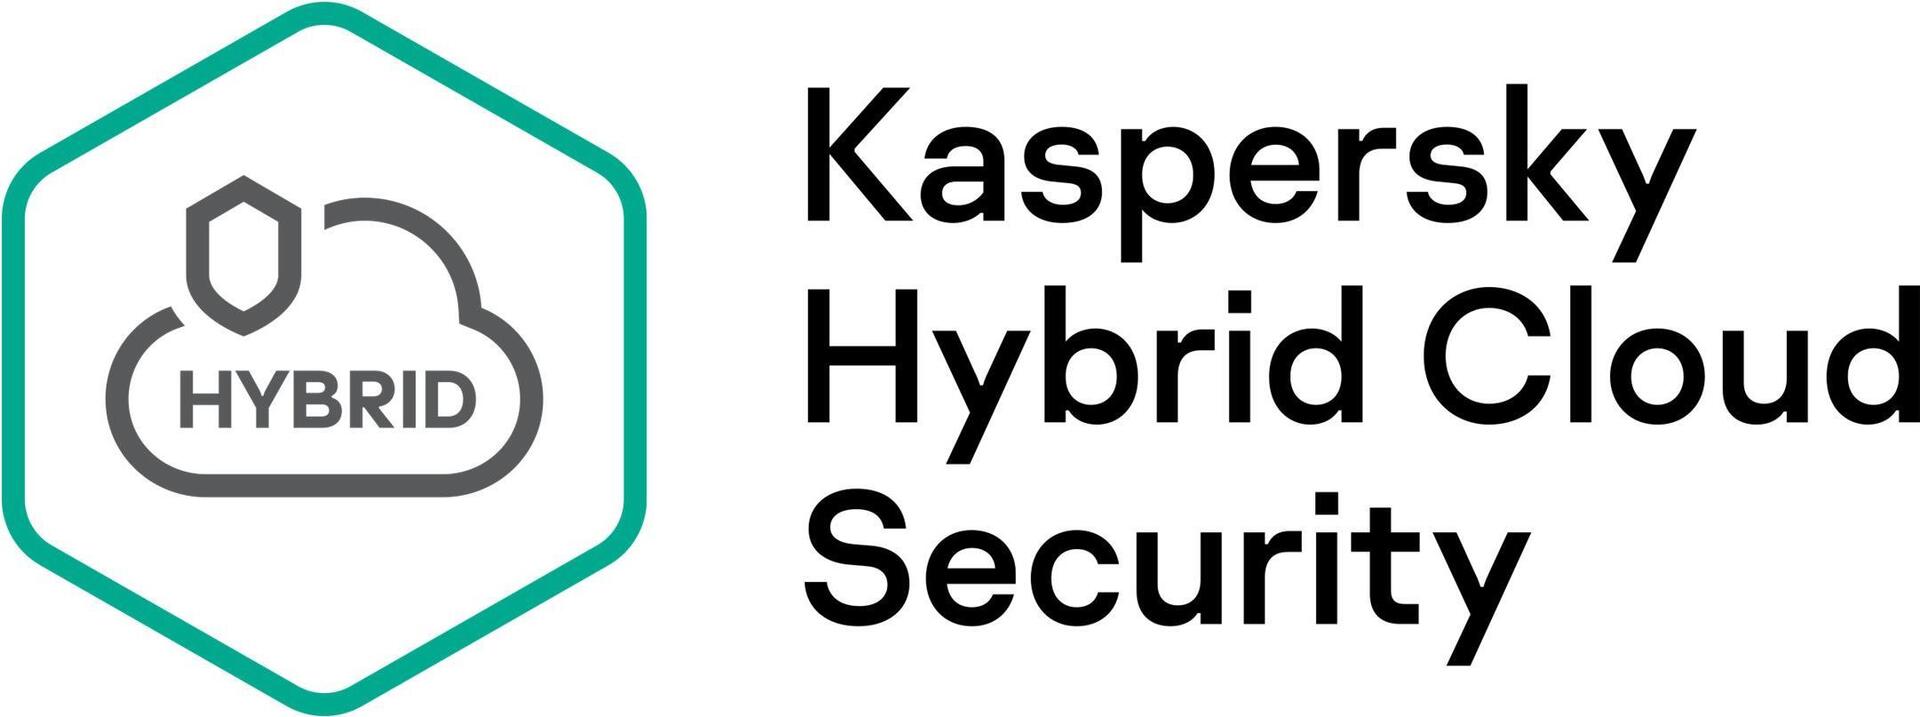 Kaspersky Hybrid Cloud Security (KL4554XASF9)